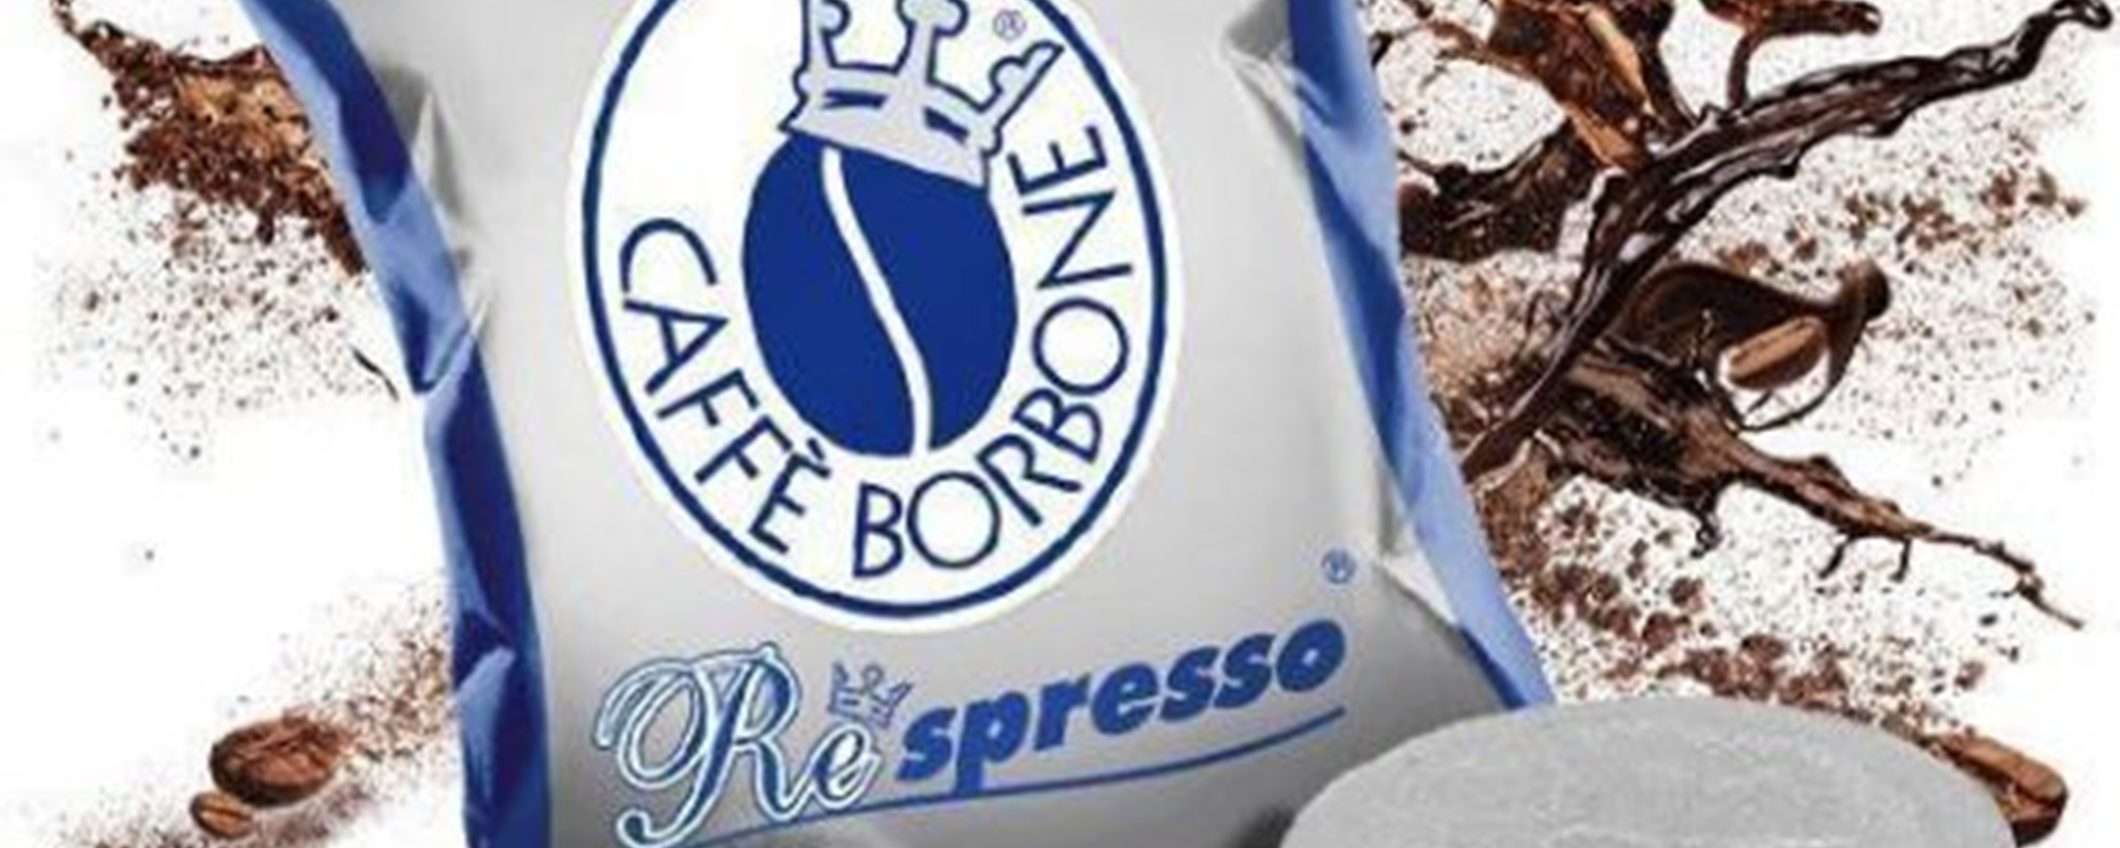 Caffè Borbone Respresso miscela Blu: 100 capsule a soli 18€